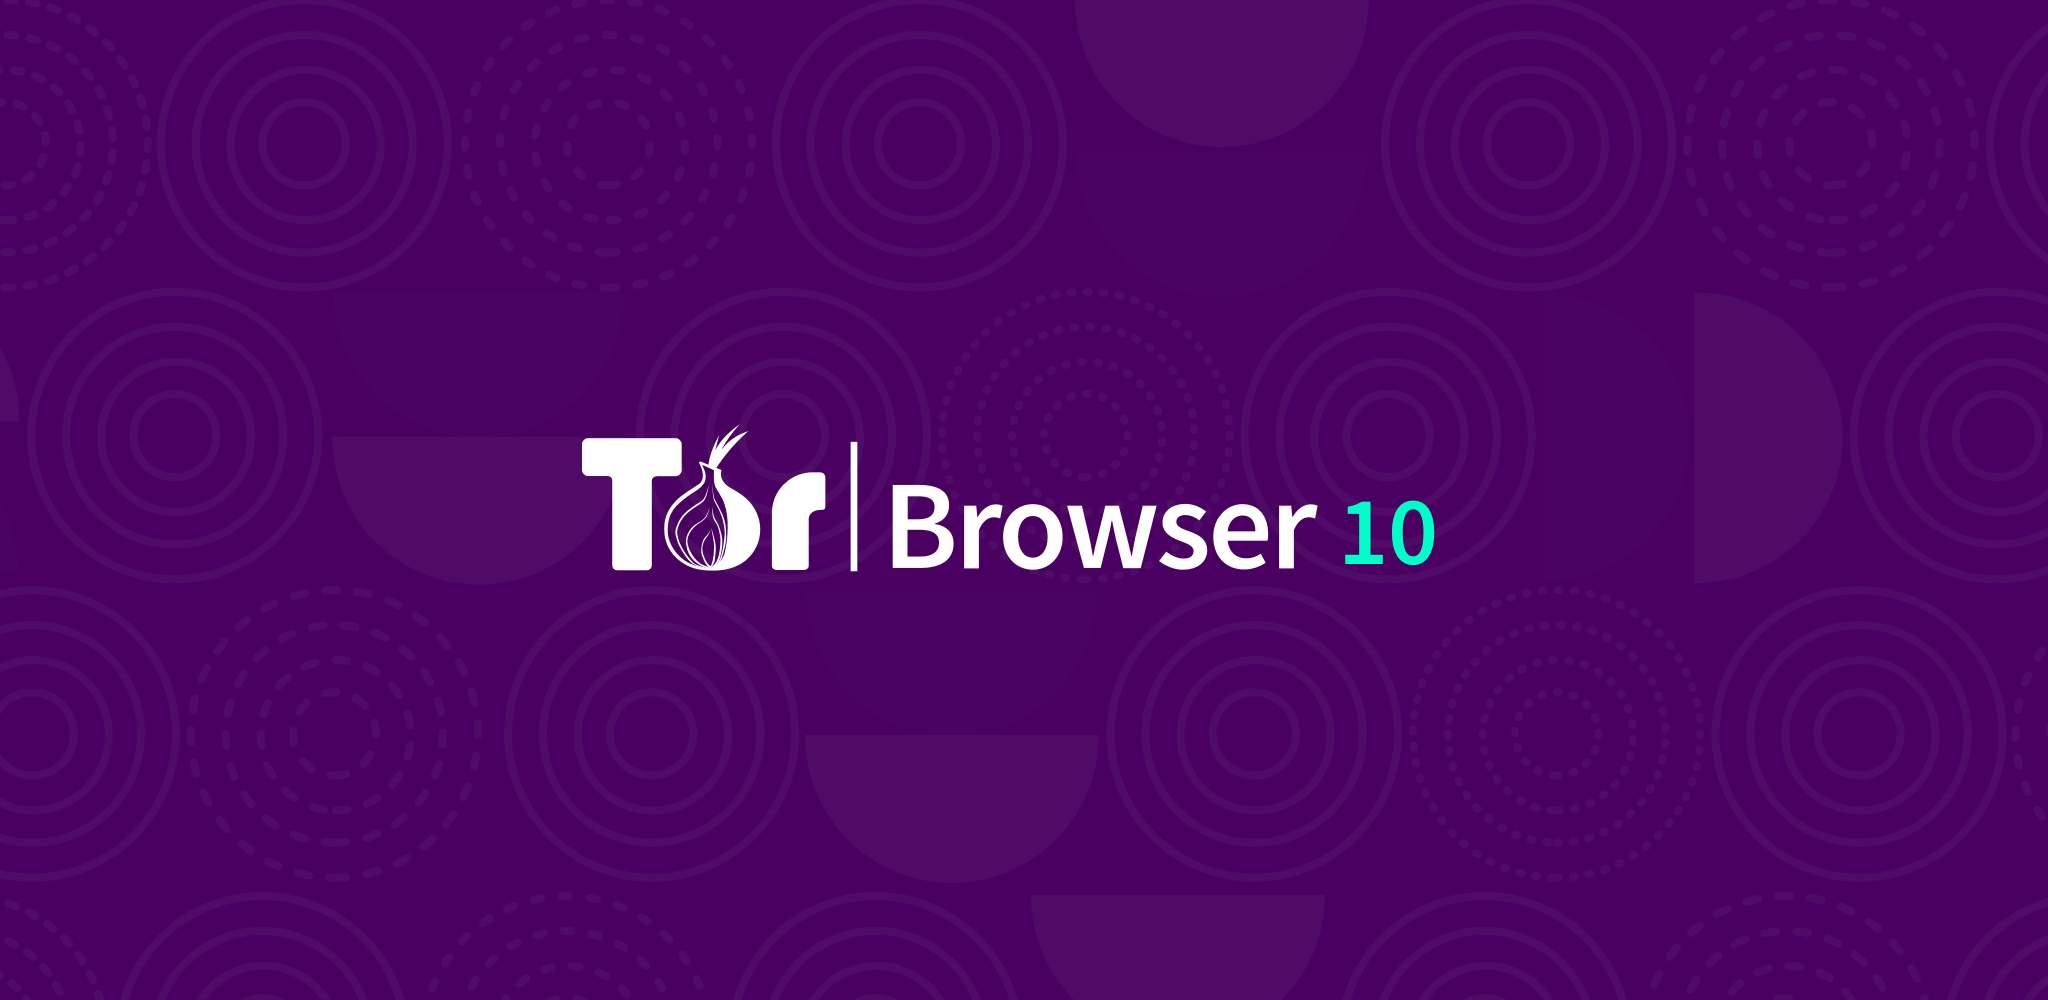 tor browser скачать на андроид apk mega